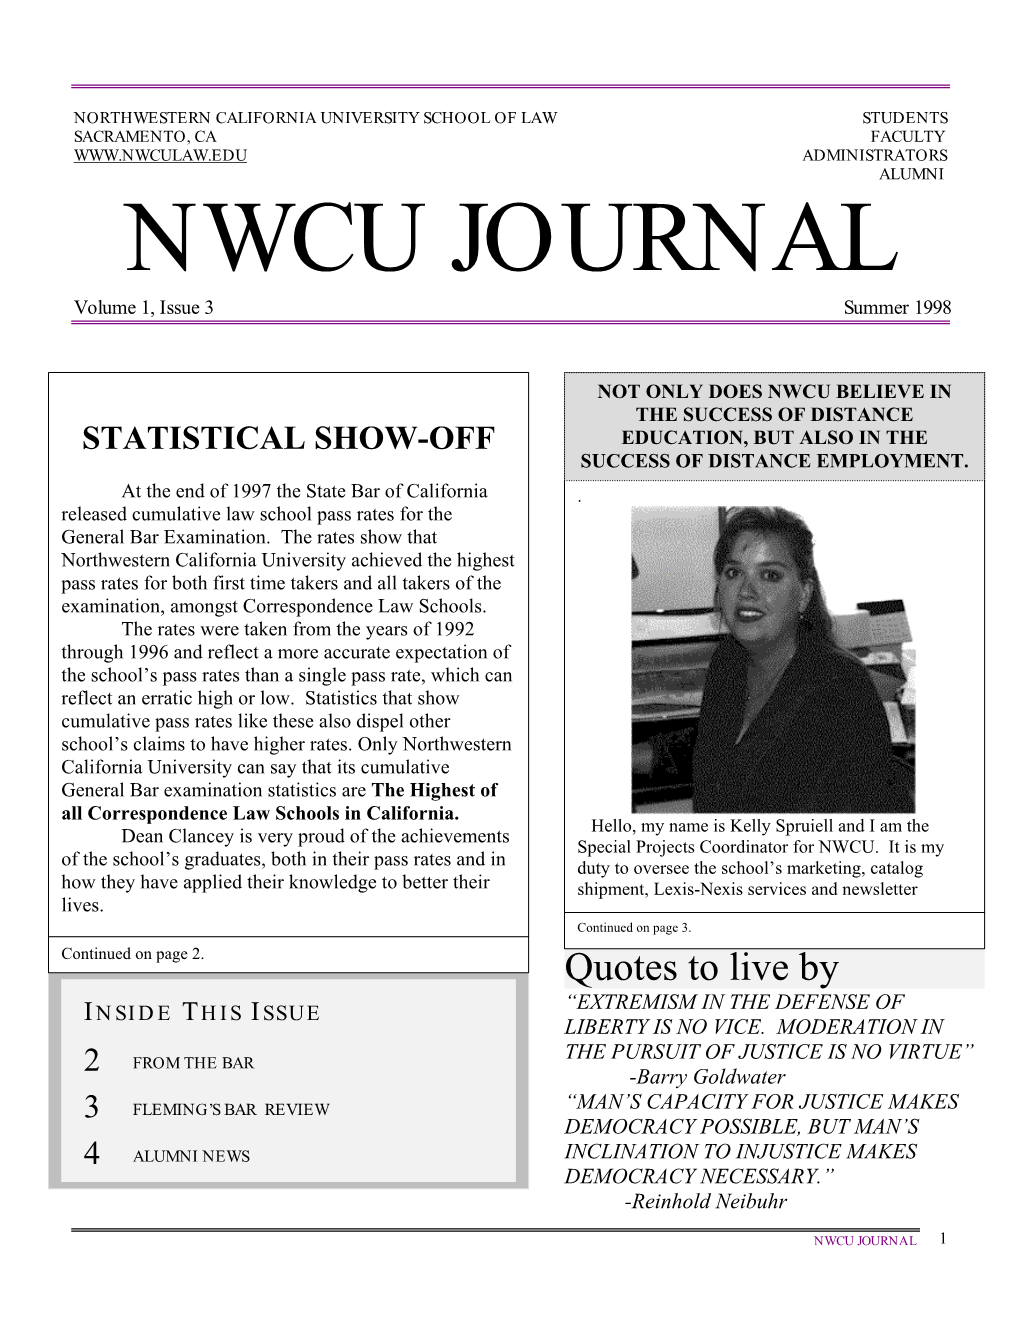 NWCU JOURNAL Volume 1, Issue 3 Summer 1998